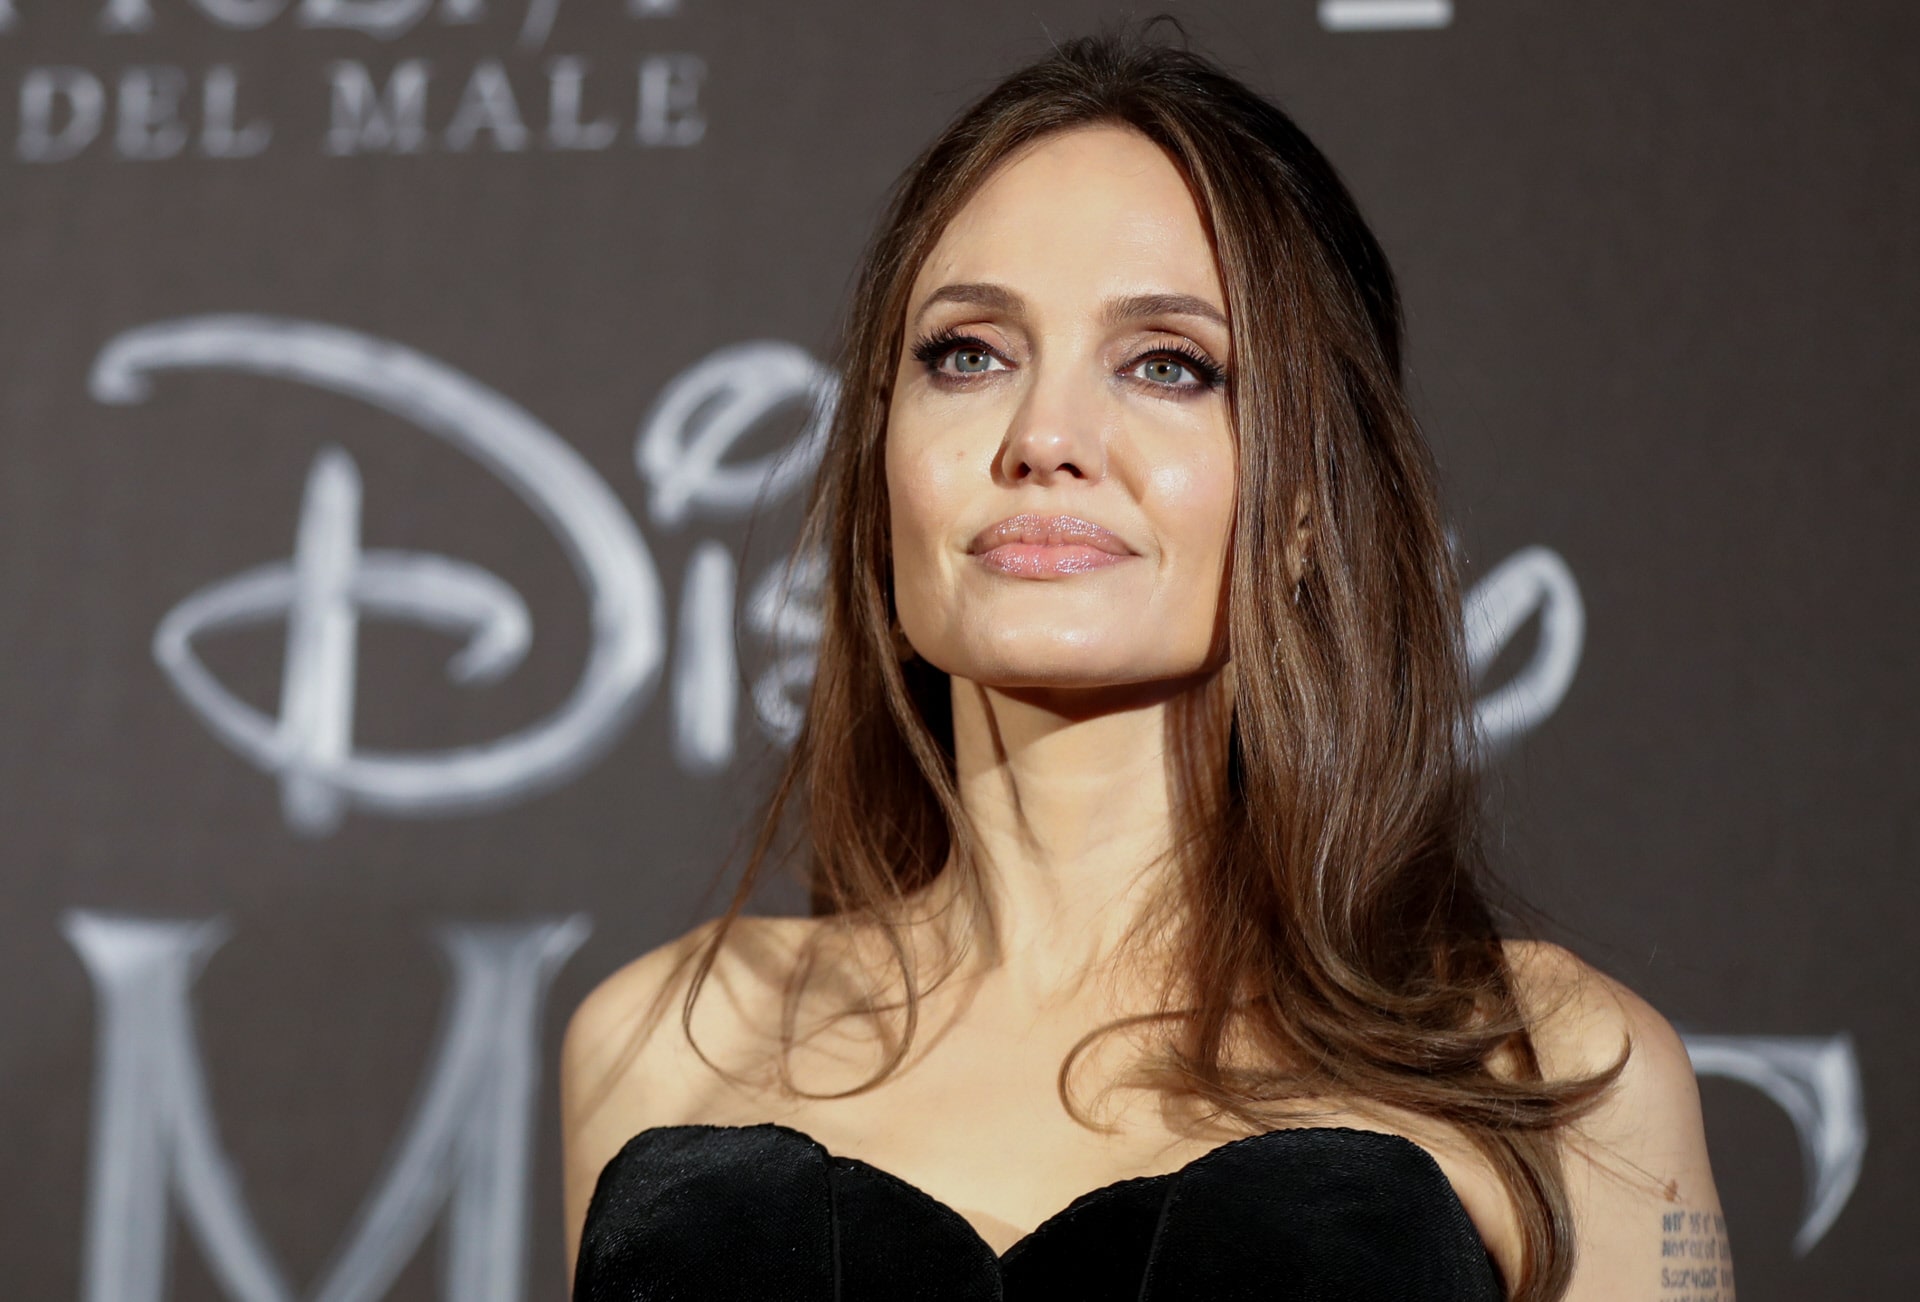  «Она похожа на пластиковую куклу»: пользователи обсуждают «новую внешность» Анджелины Джоли